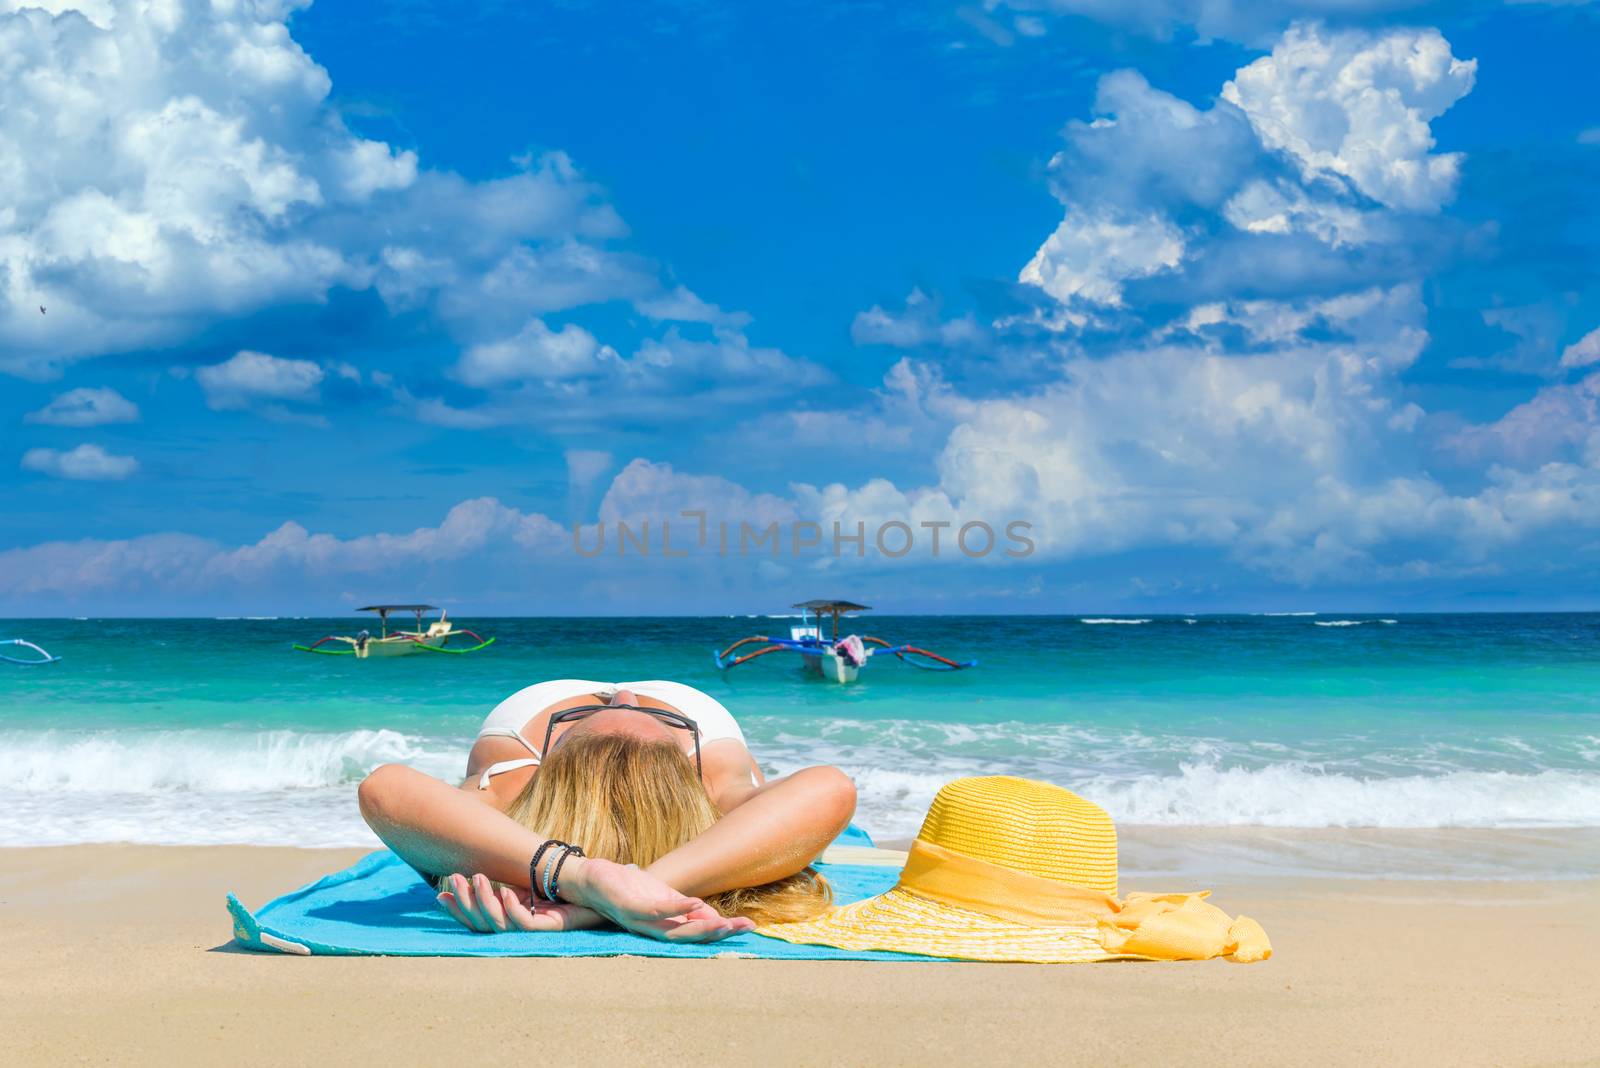 Woman in yellow bikini lying on tropical beach in Bali 